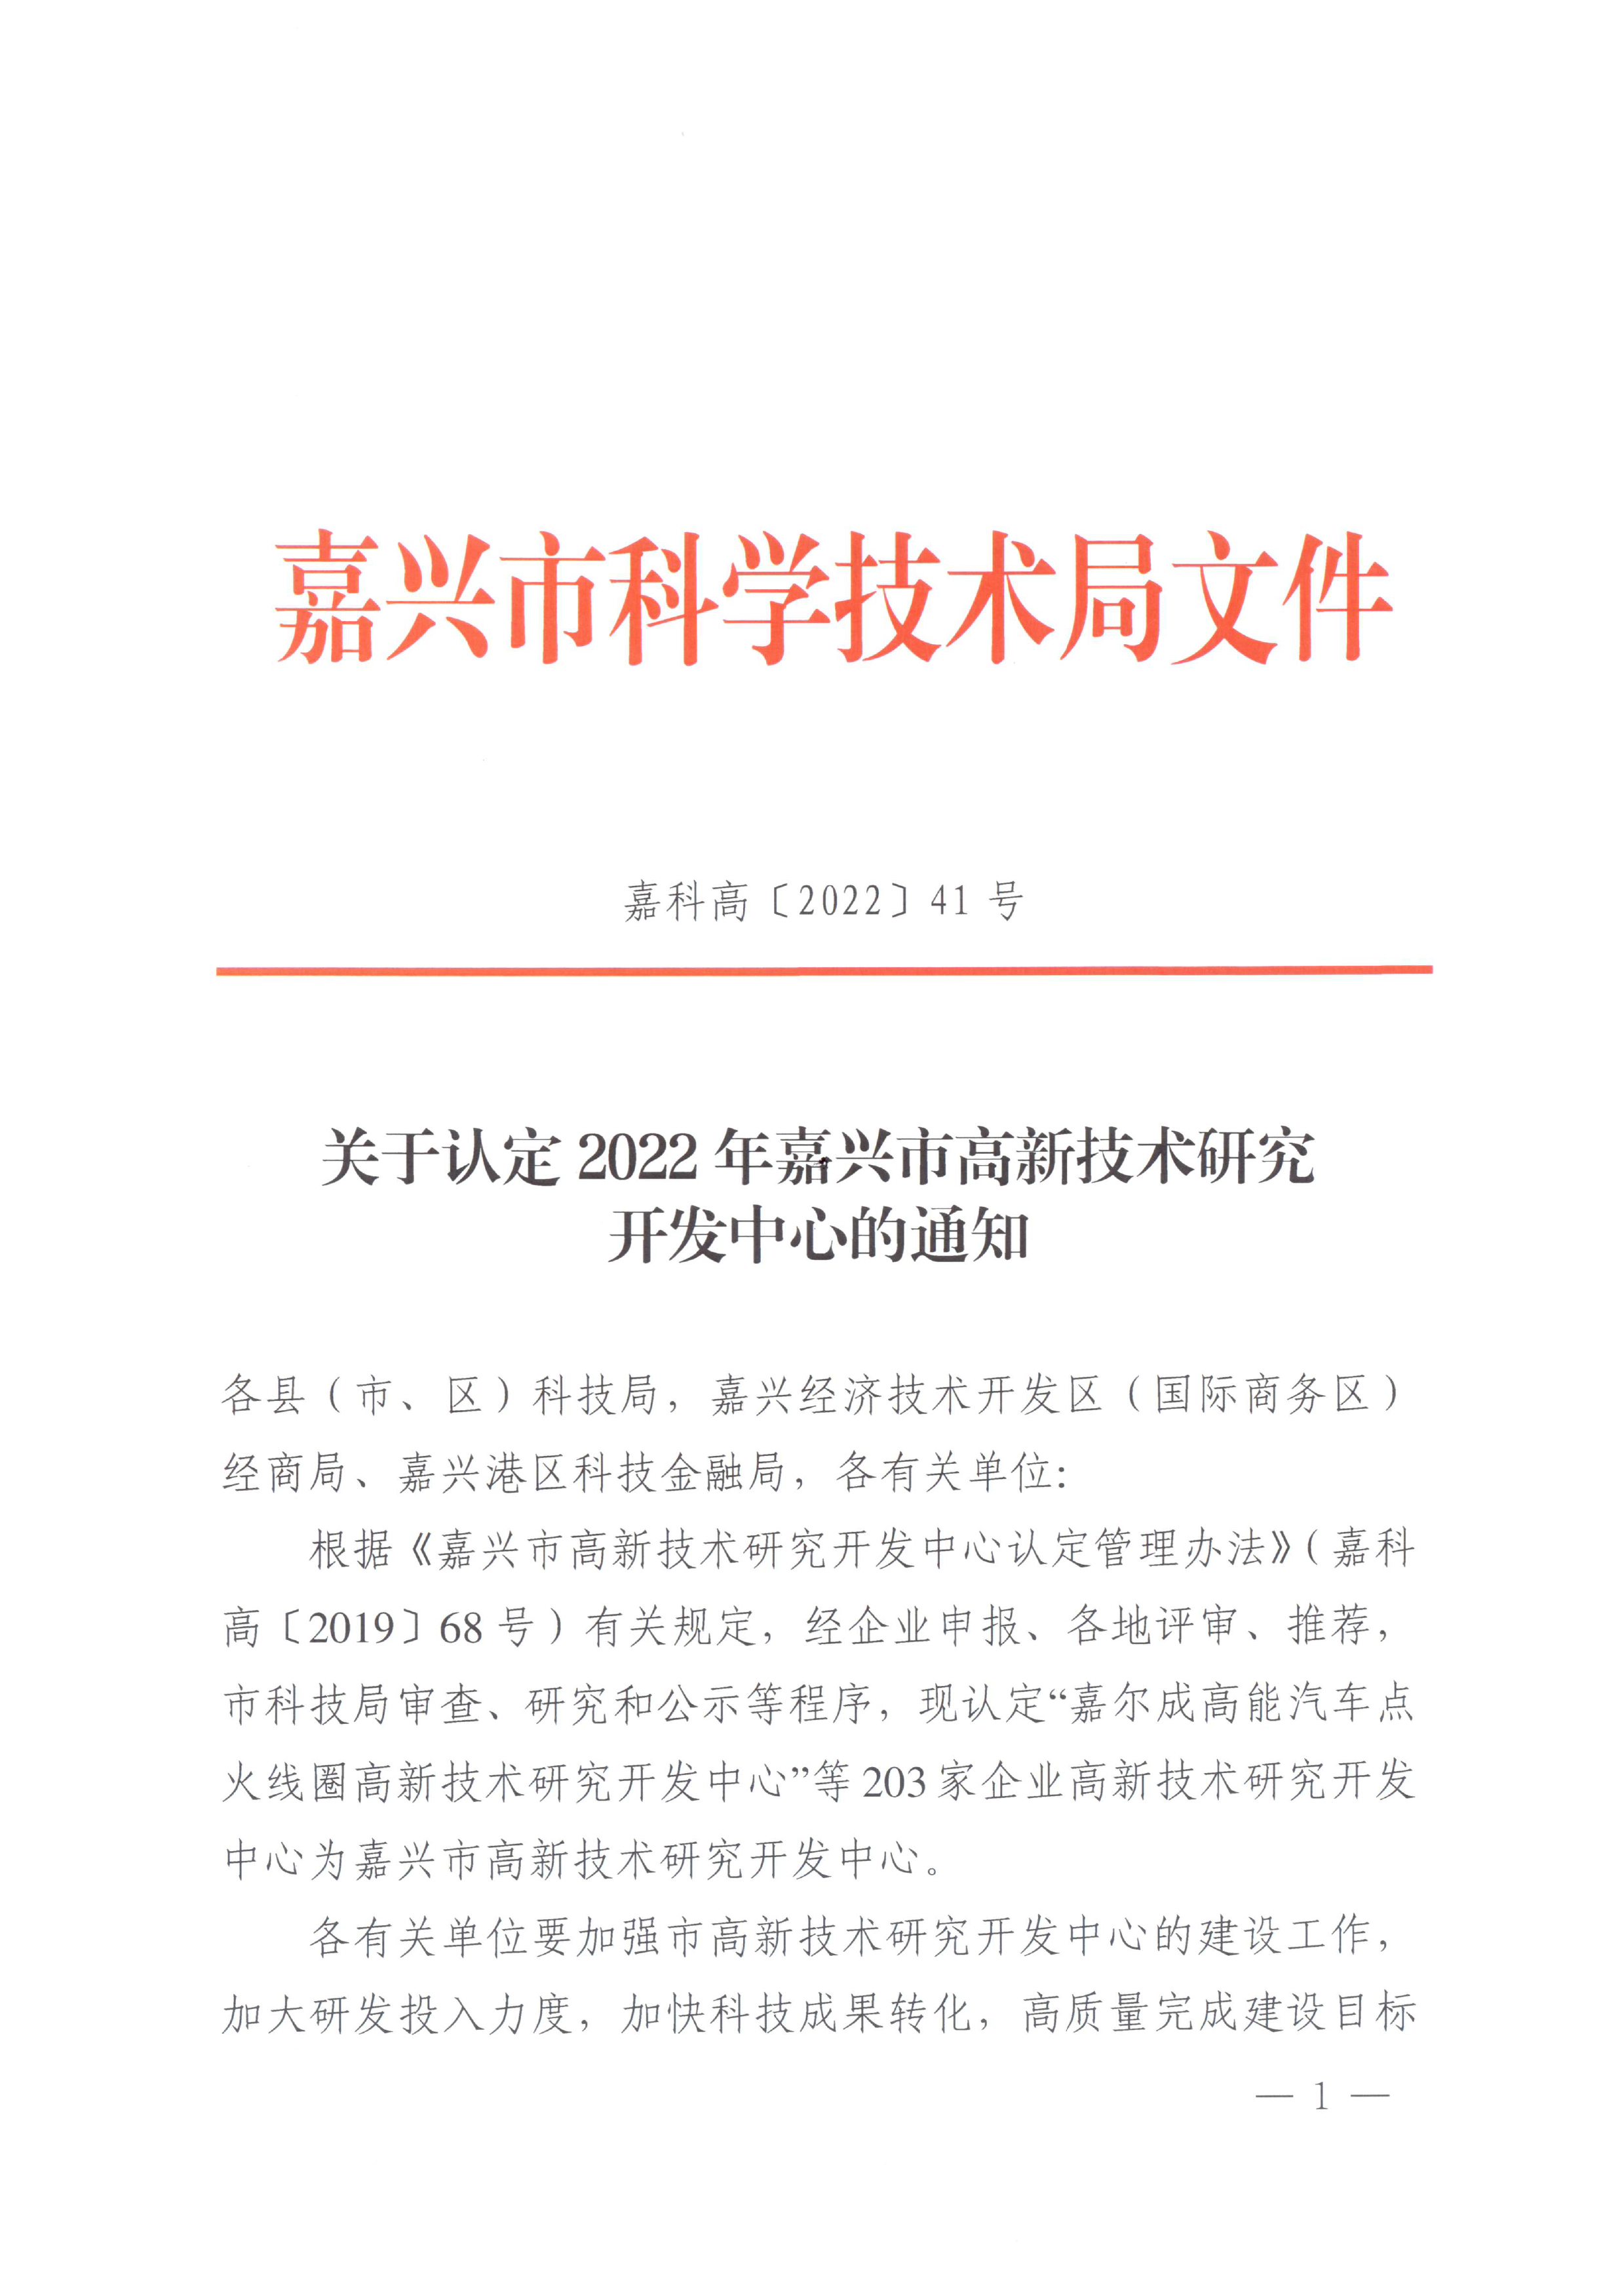 页面提取自－嘉科高〔2022〕41号关于认定2022年嘉兴市高新技术研究开发中心的通知-1.jpg